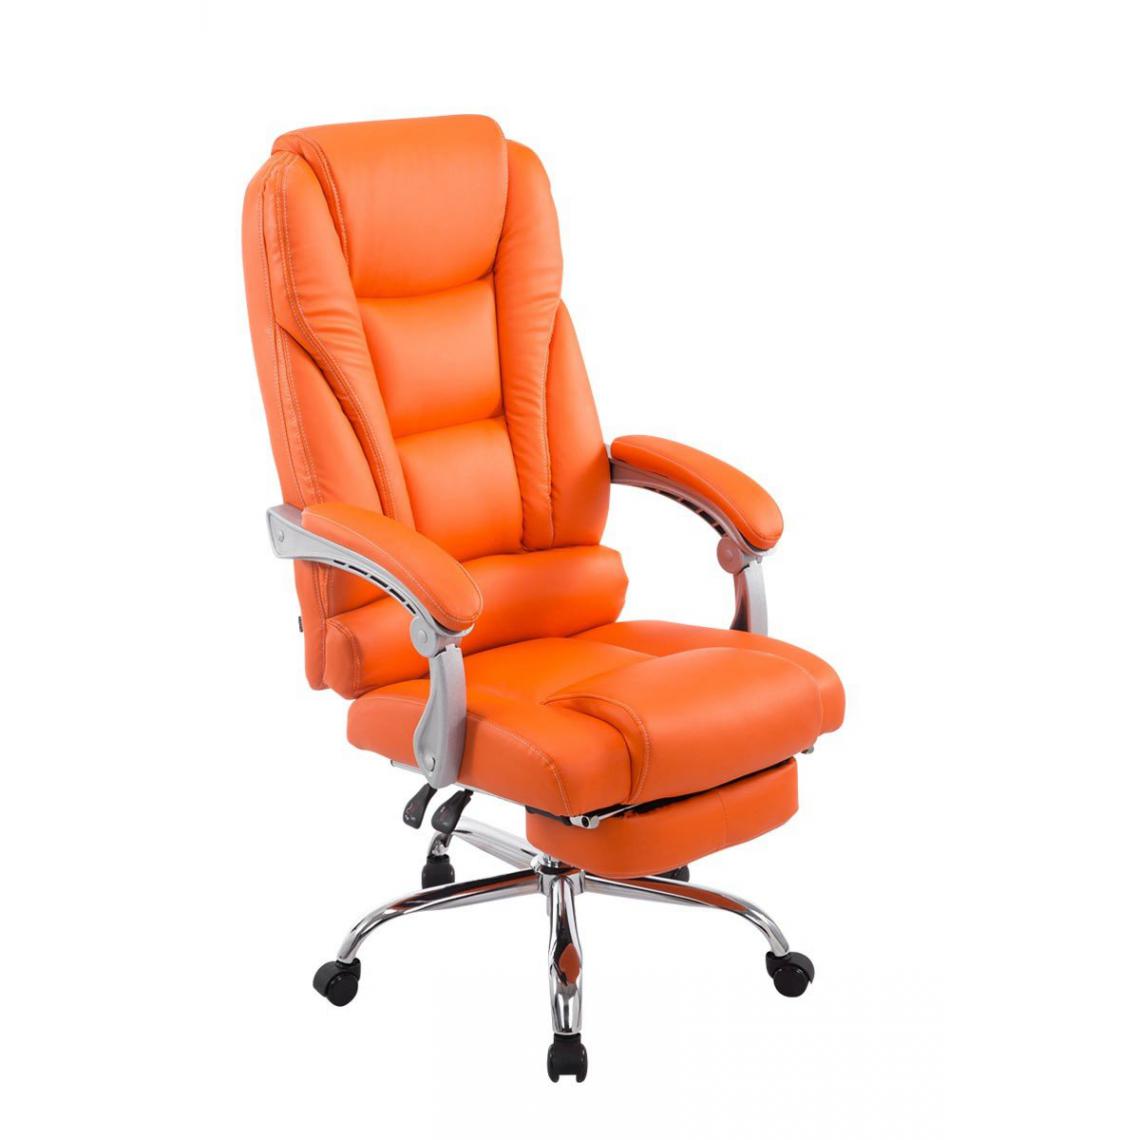 Decoshop26 - Fauteuil de bureau ergonomique avec repose-pieds extensible similicuir orange BUR10165 - Bureaux